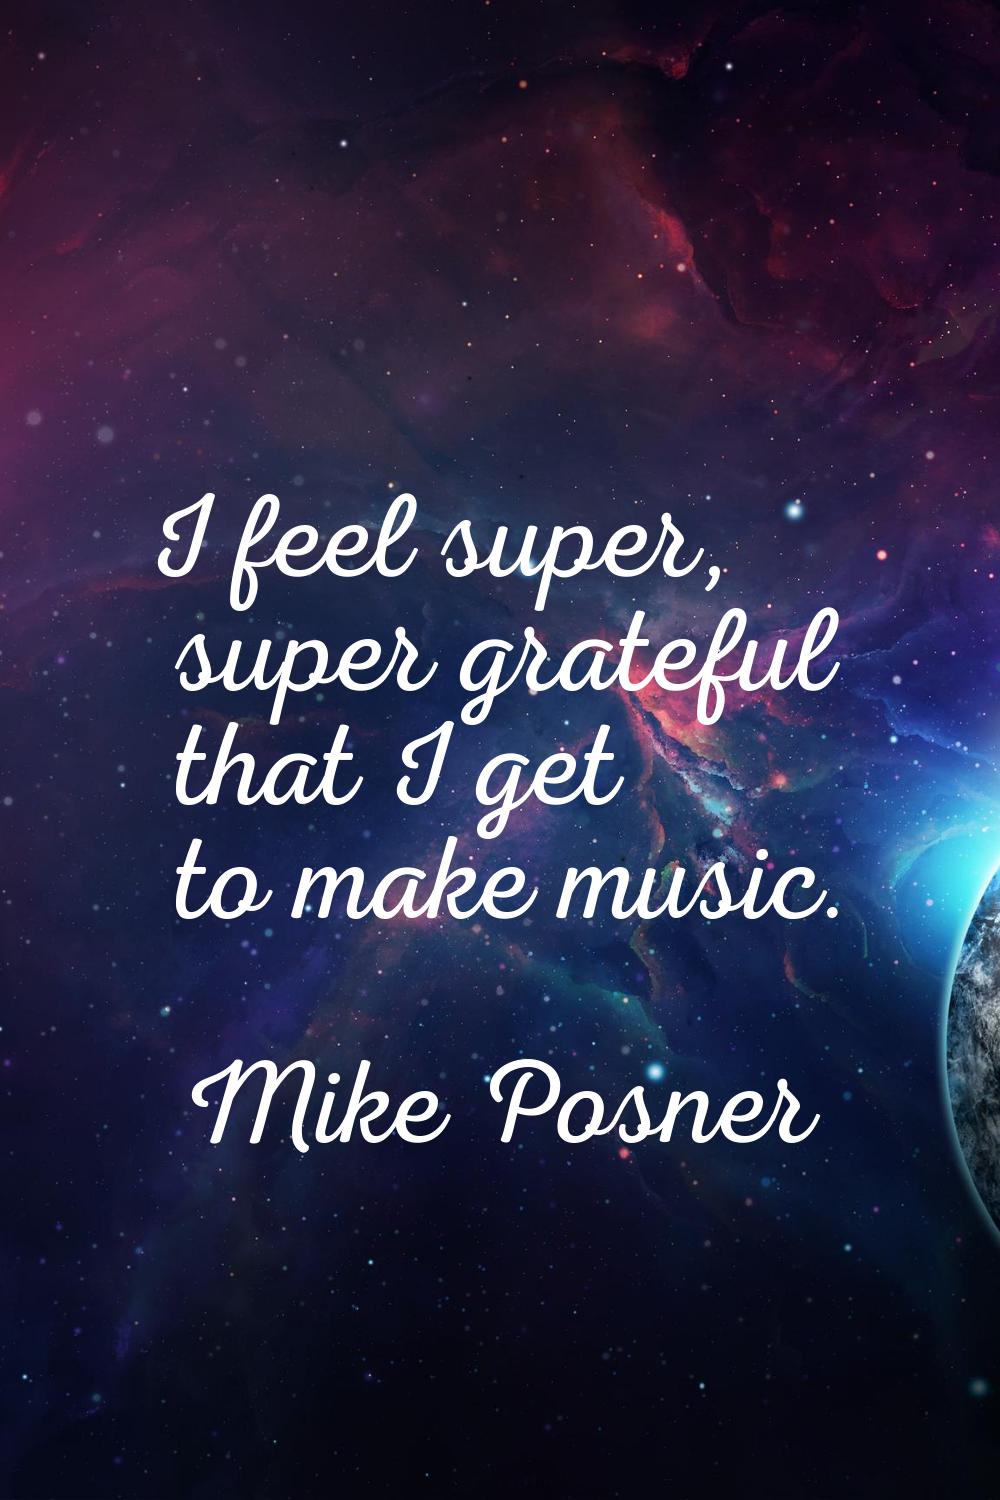 I feel super, super grateful that I get to make music.